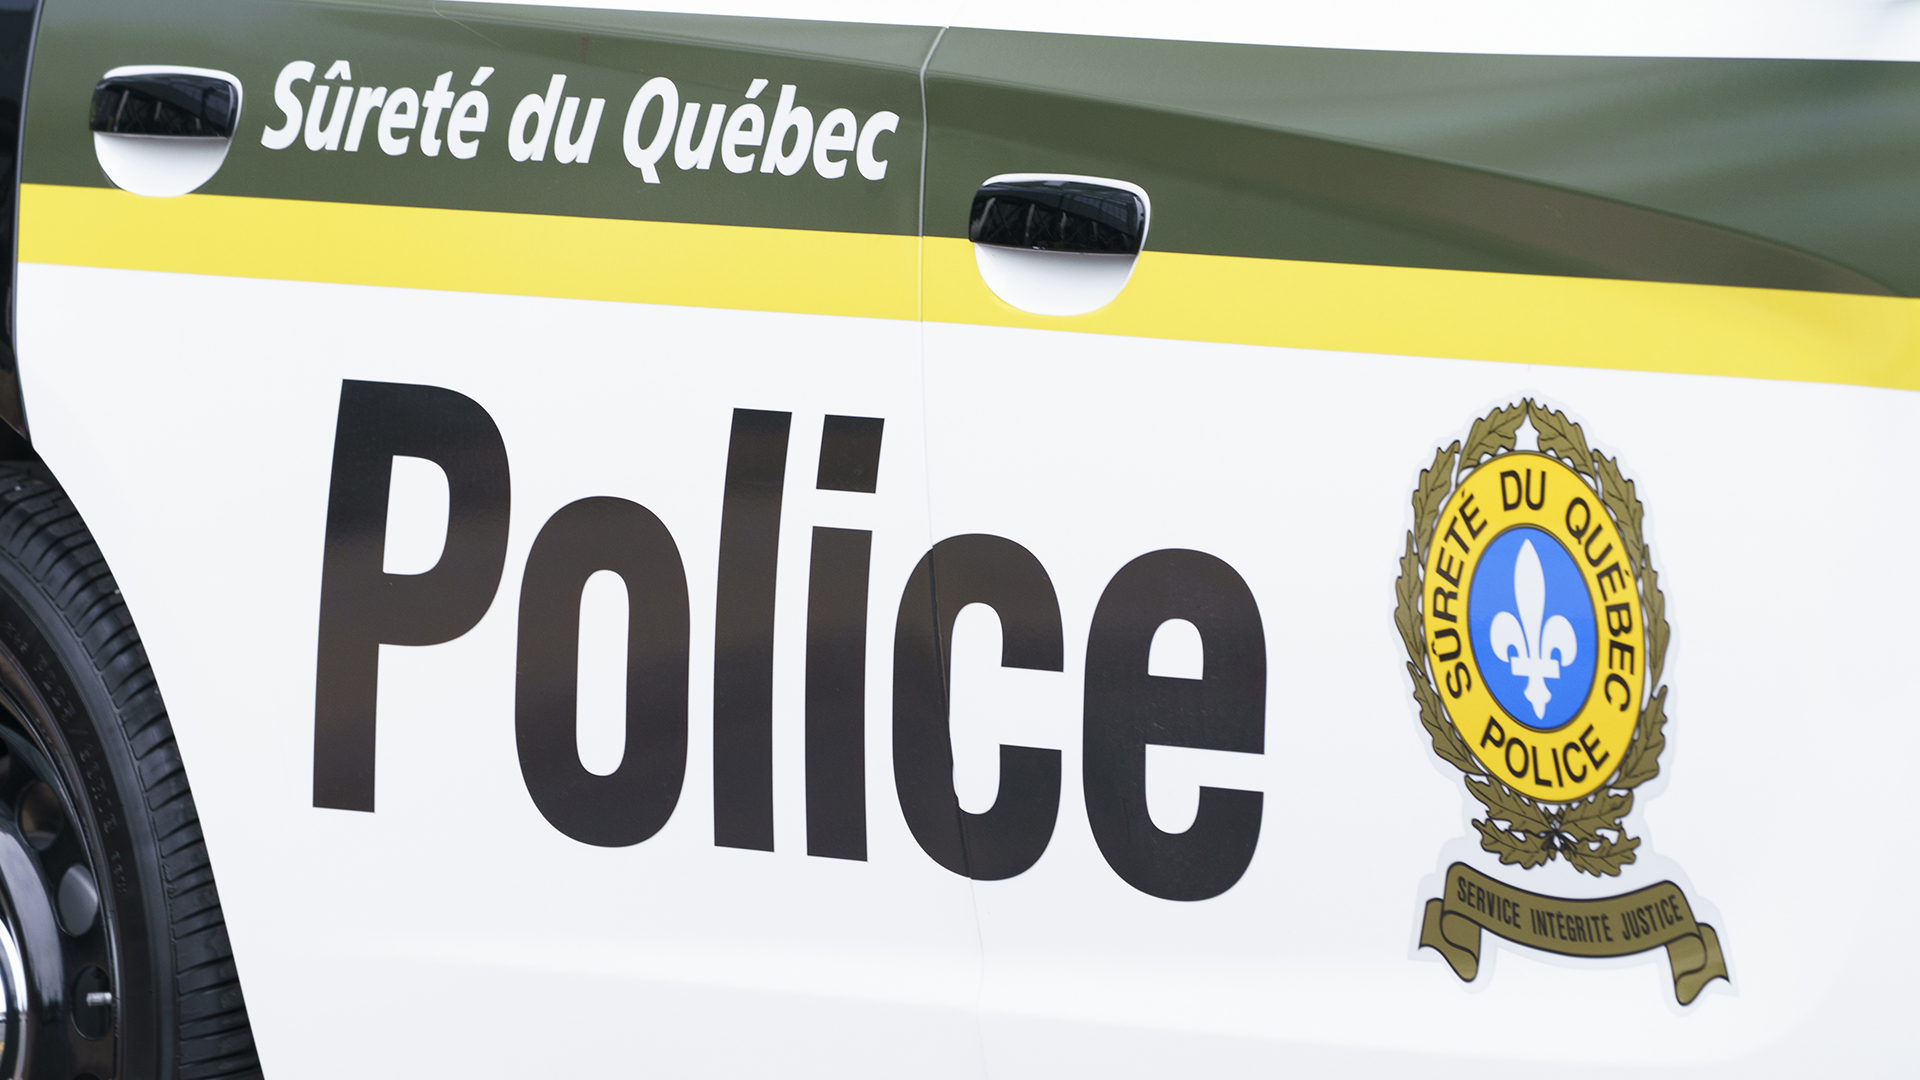 Une collision frontale entre deux véhicules est survenue samedi soir sur l'autoroute 50 dans le secteur de Lochaber-Partie-Ouest, en Outaouais. Deux personnes se trouvent dans un état critique.